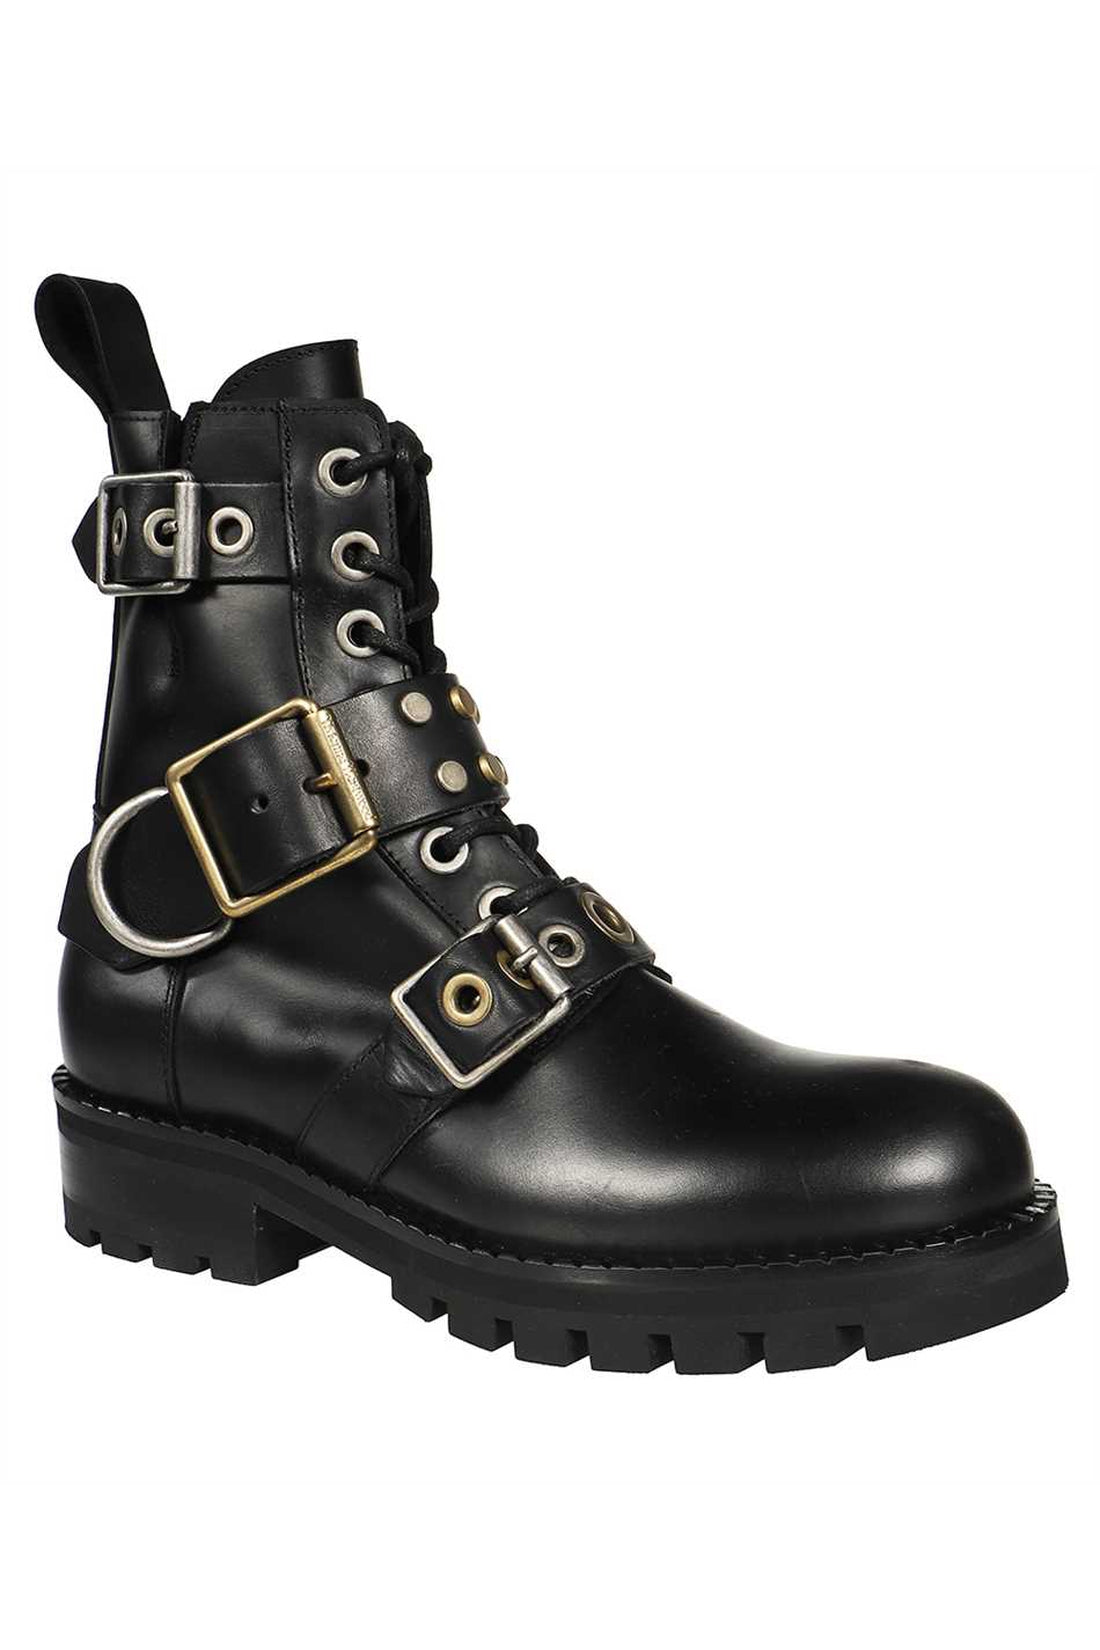 Vivienne Westwood-OUTLET-SALE-Leather combat boots-ARCHIVIST